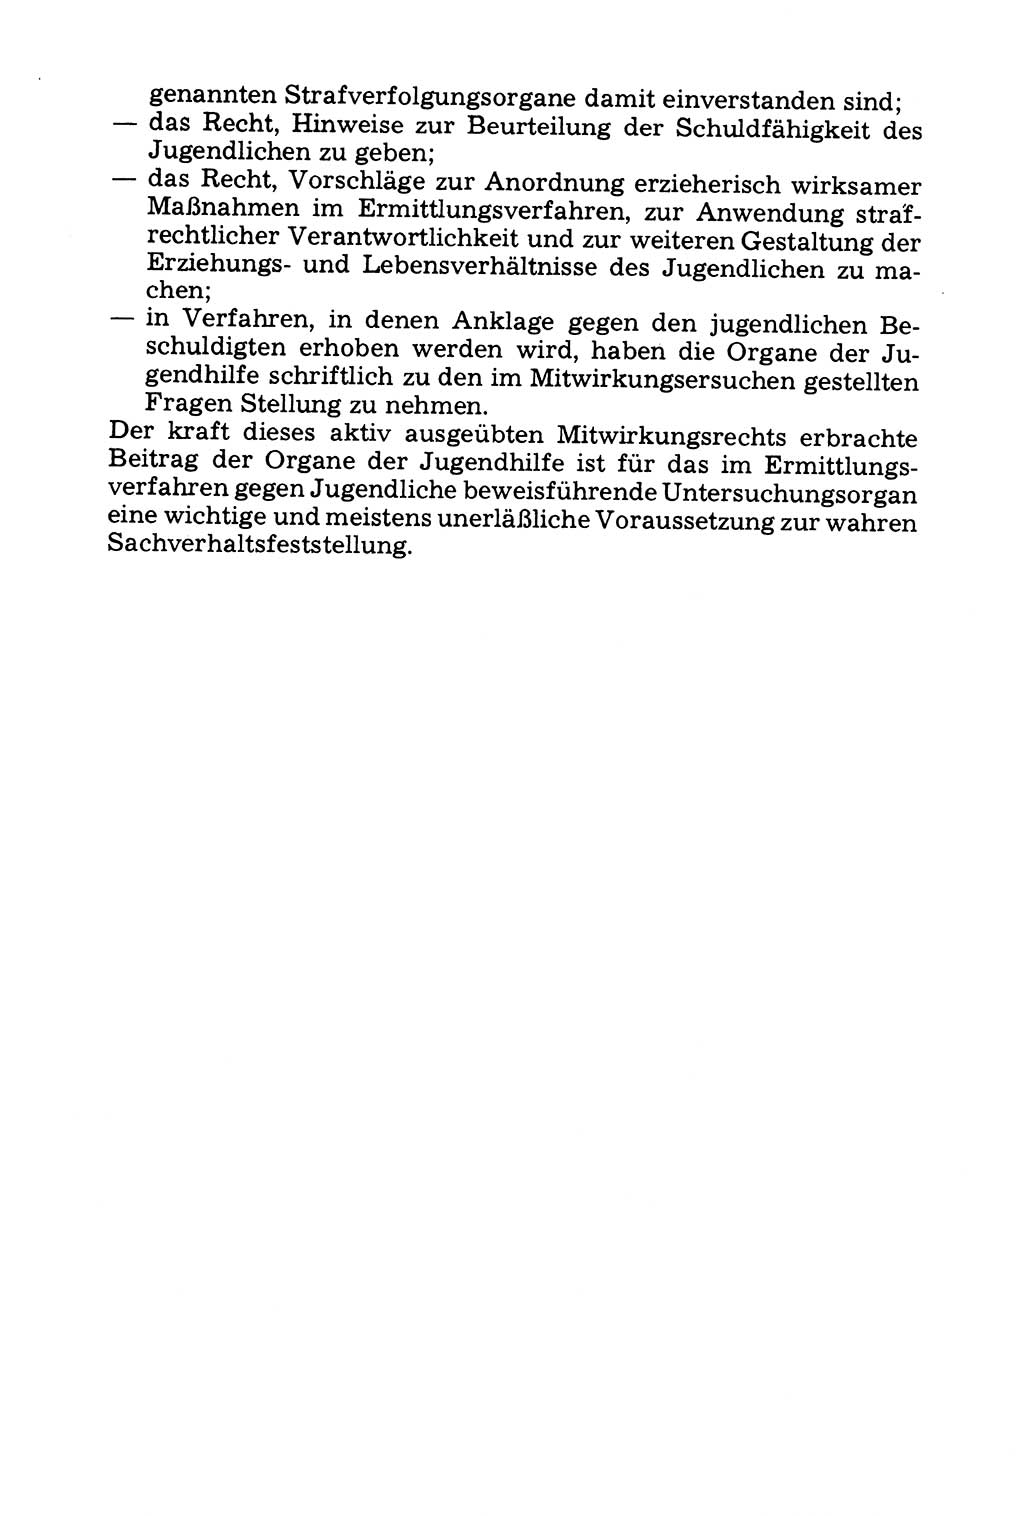 Grundfragen der Beweisführung im Ermittlungsverfahren [Deutsche Demokratische Republik (DDR)] 1980, Seite 168 (Bws.-Fhrg. EV DDR 1980, S. 168)